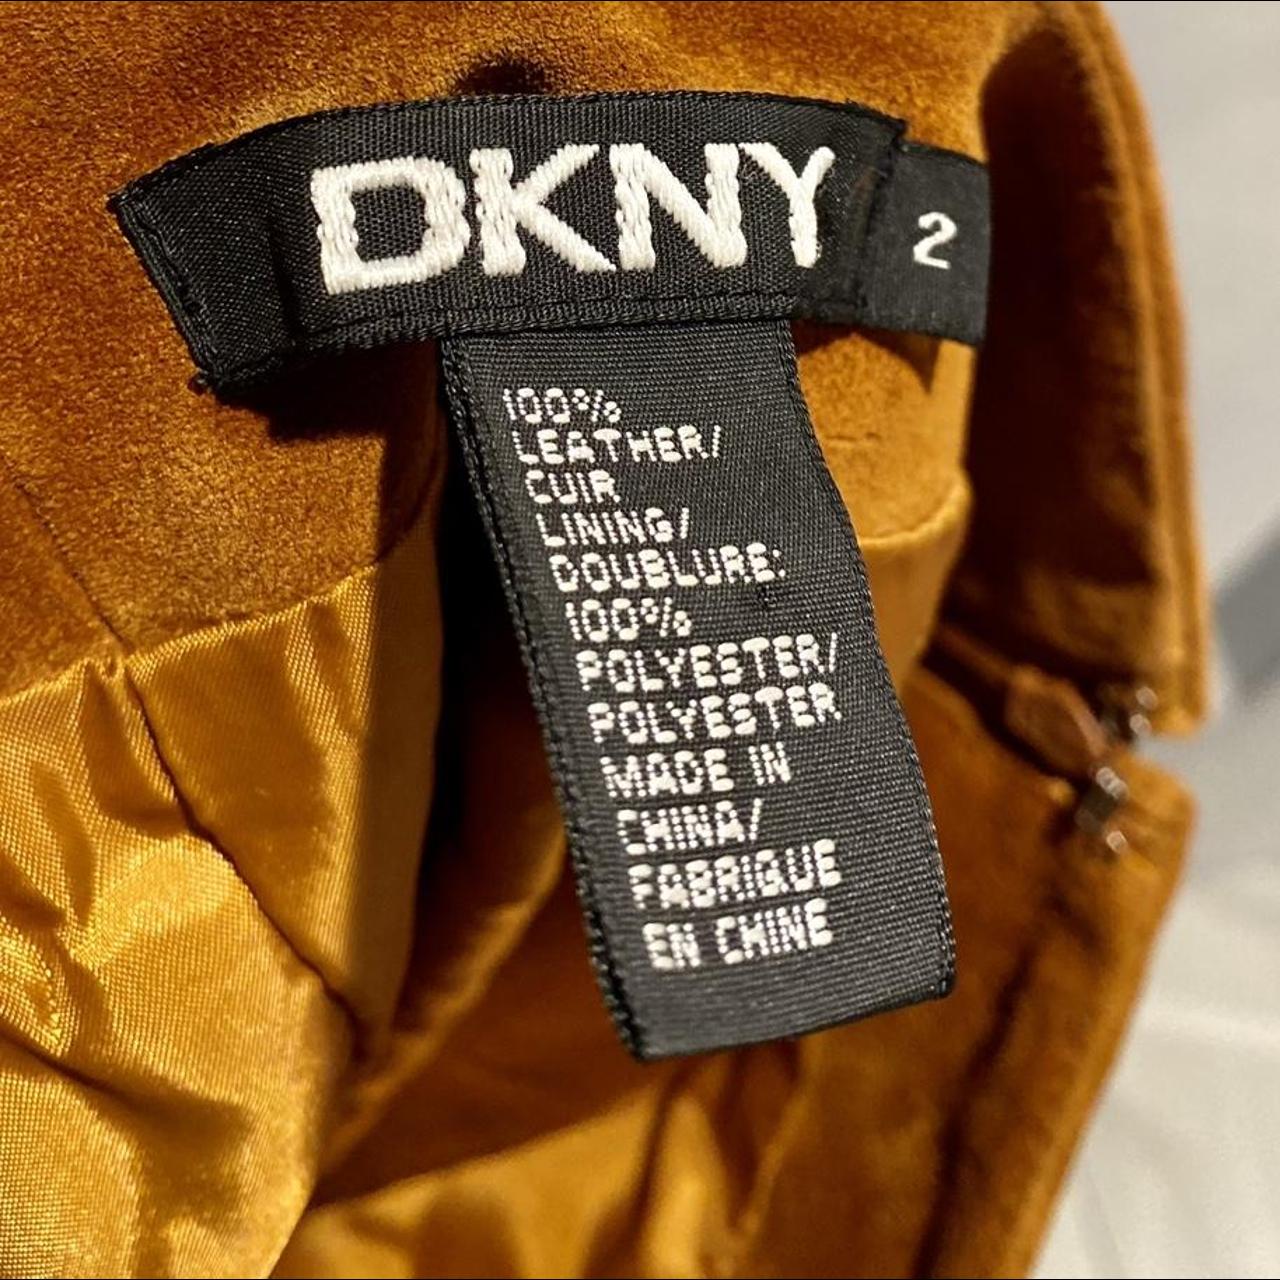 DKNY 100％ LEATHER/CUIR